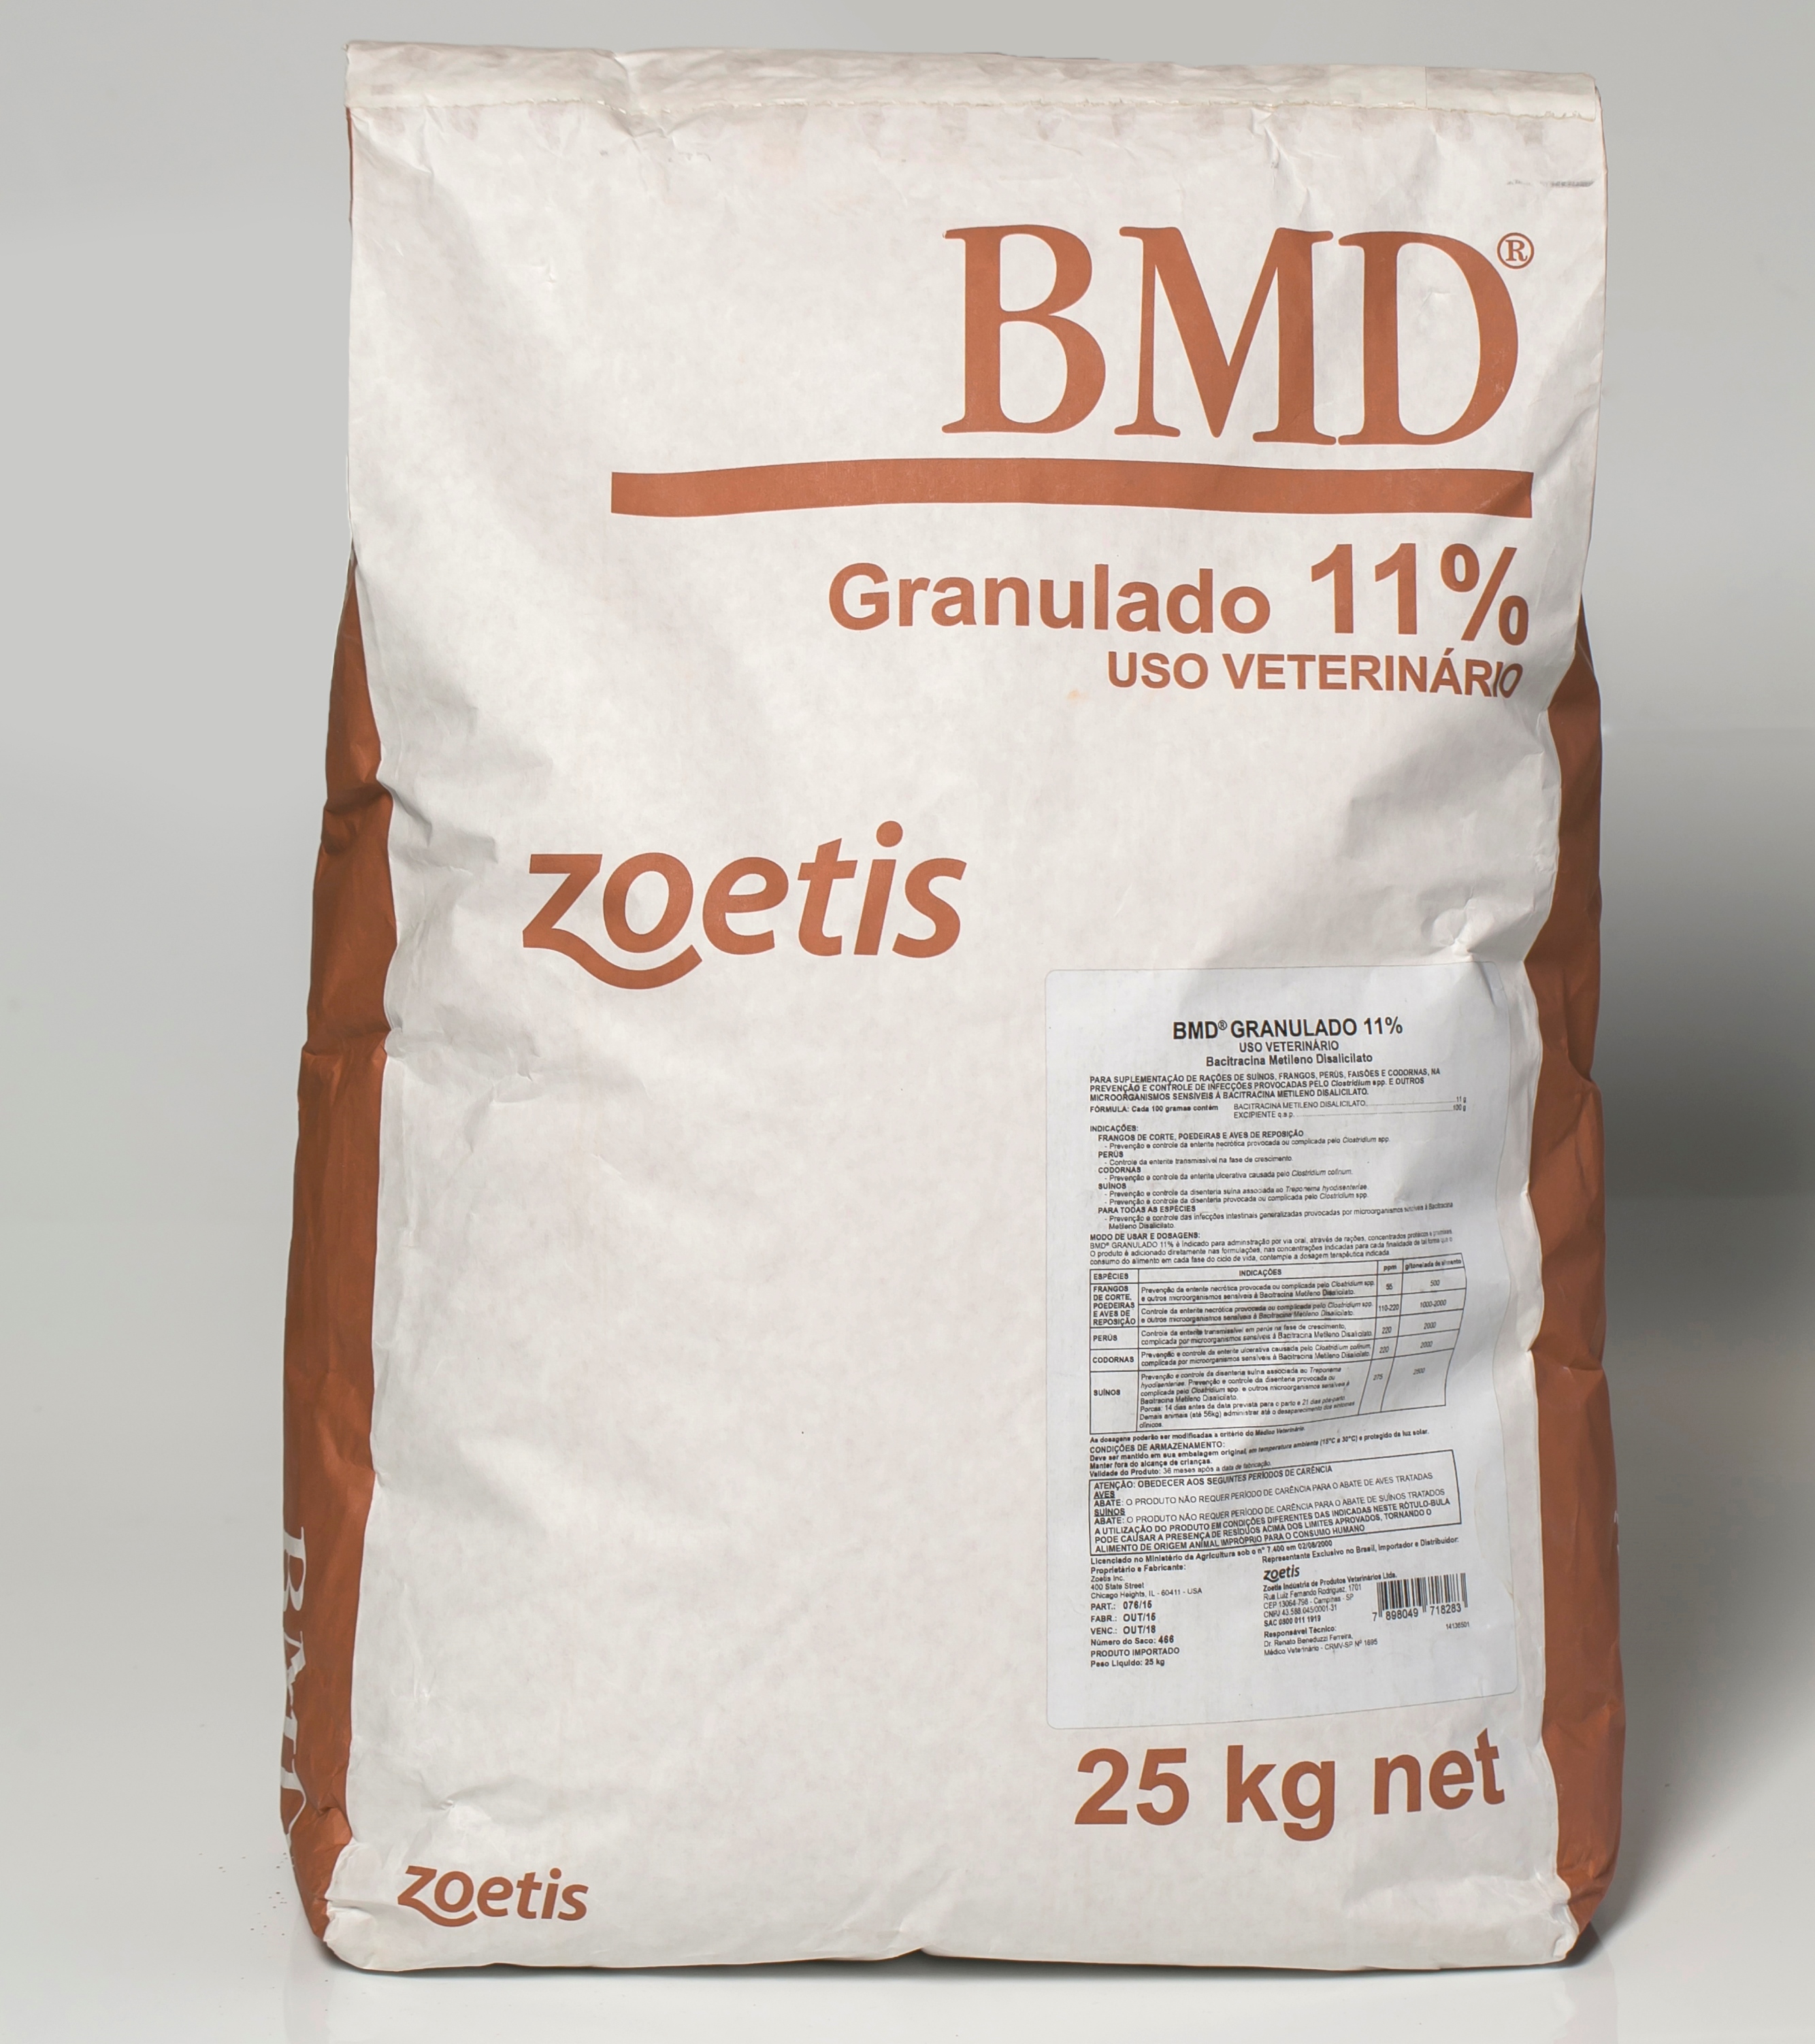 BMD® Granulado 11%